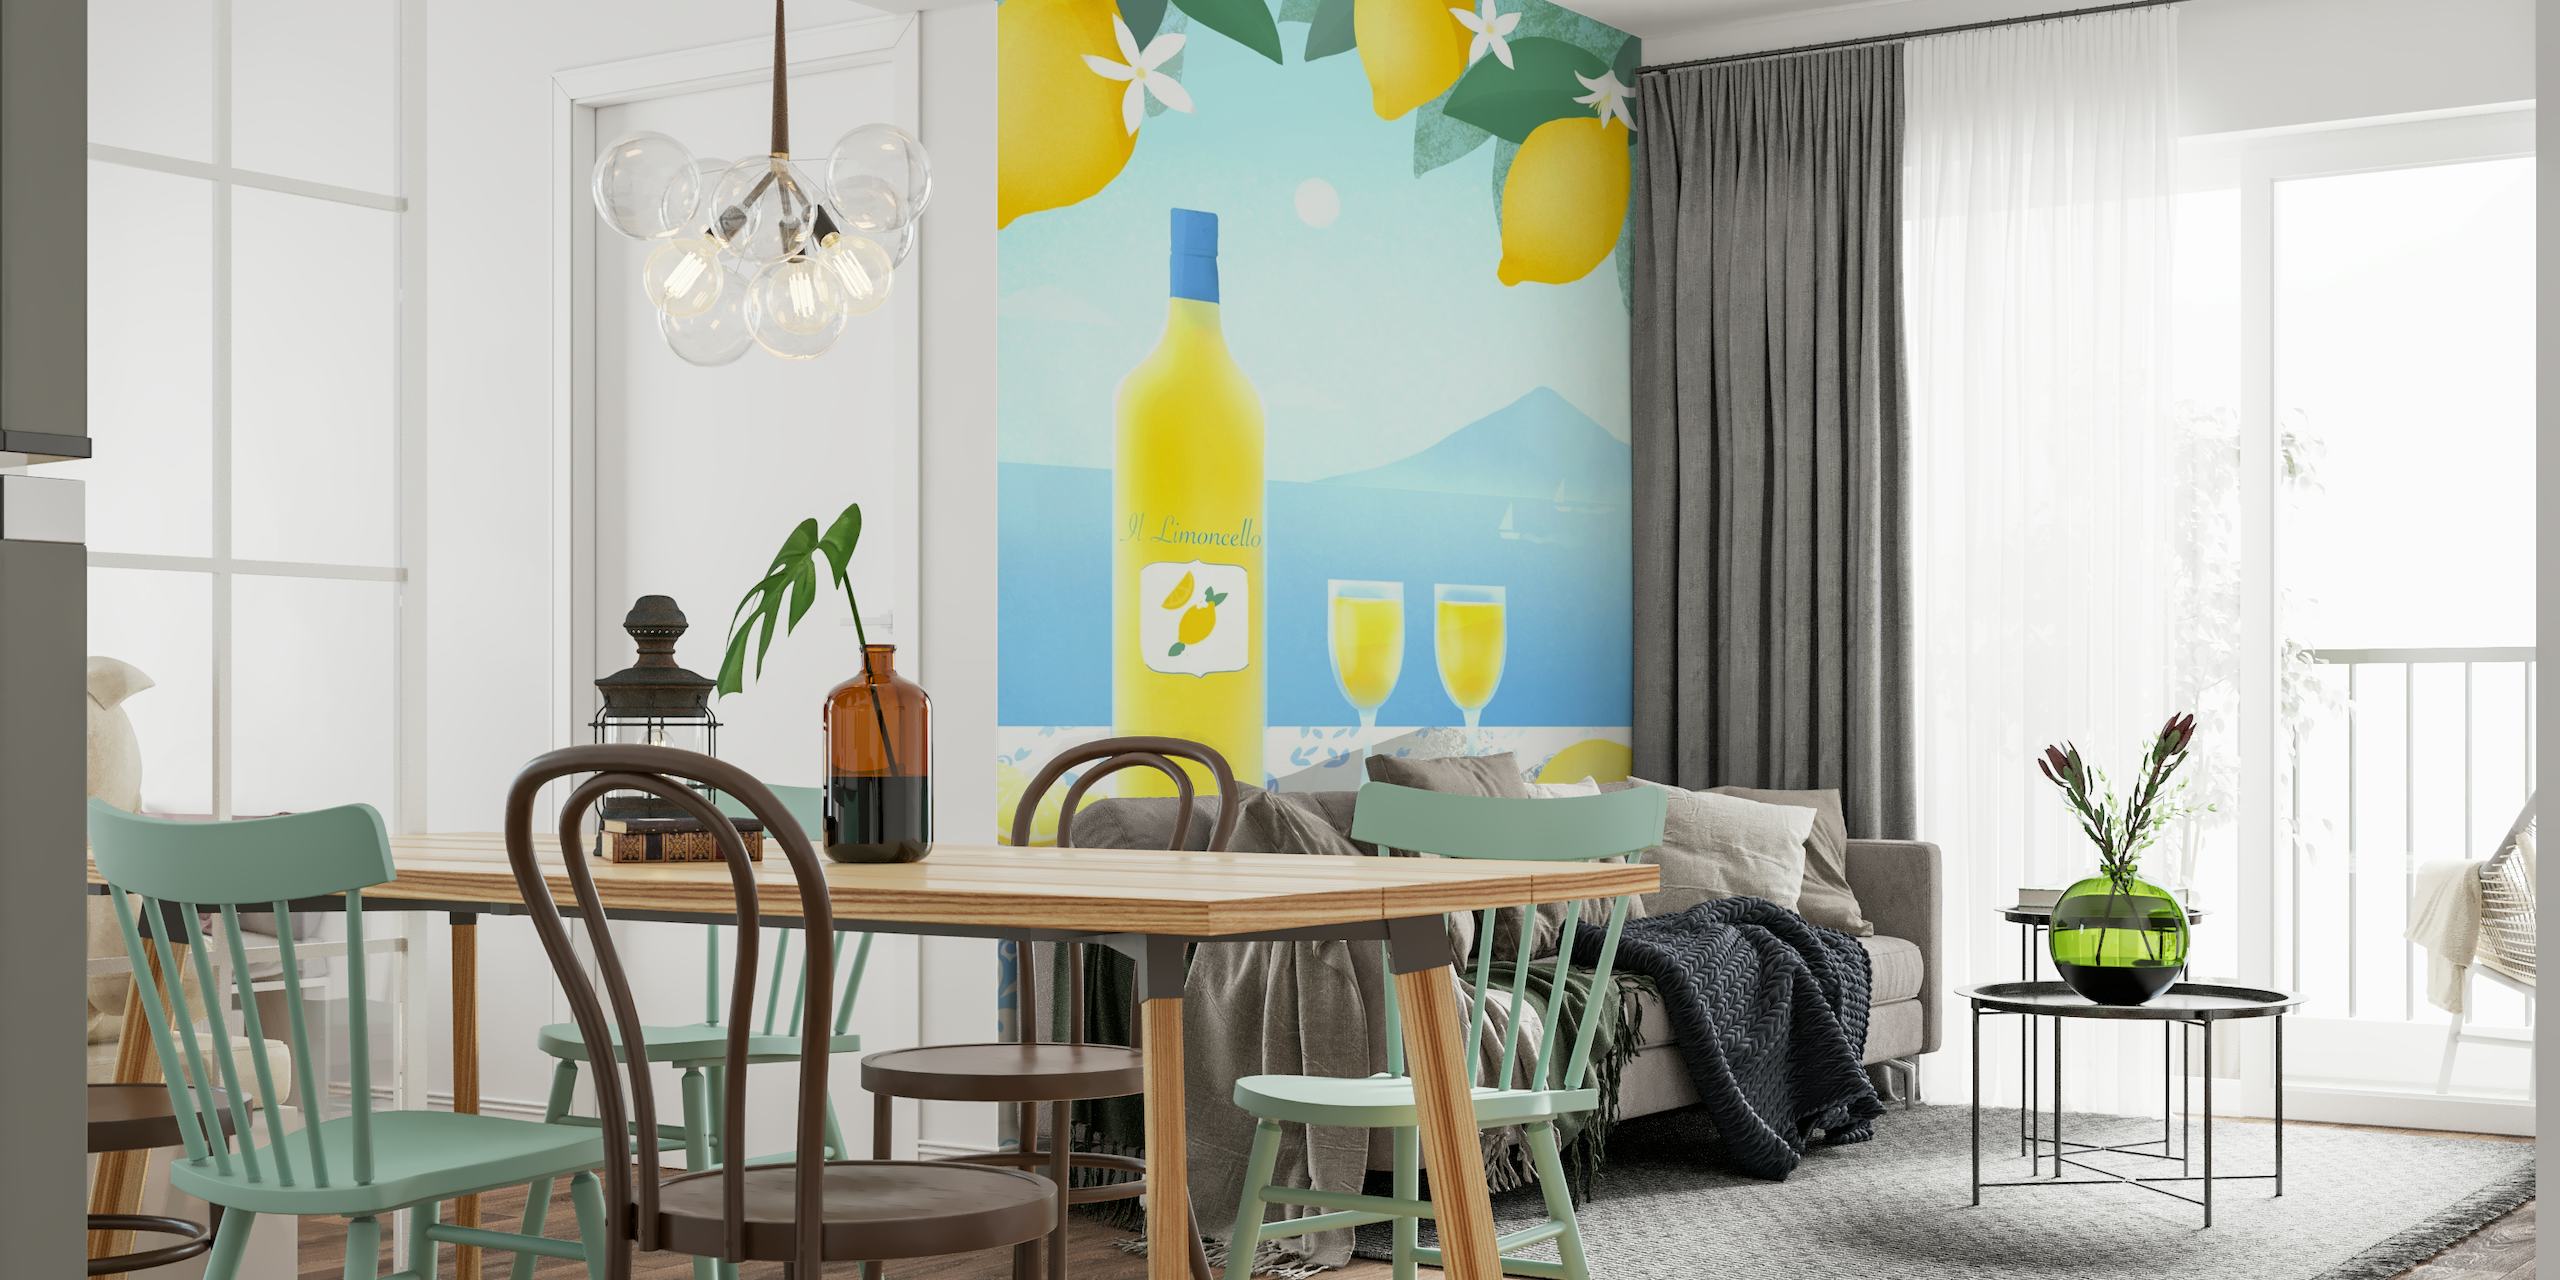 Fototapeta Limoncello s citroníky, lahví limoncella, sklenicemi, výhledem na moře a středomořskými dlaždicemi